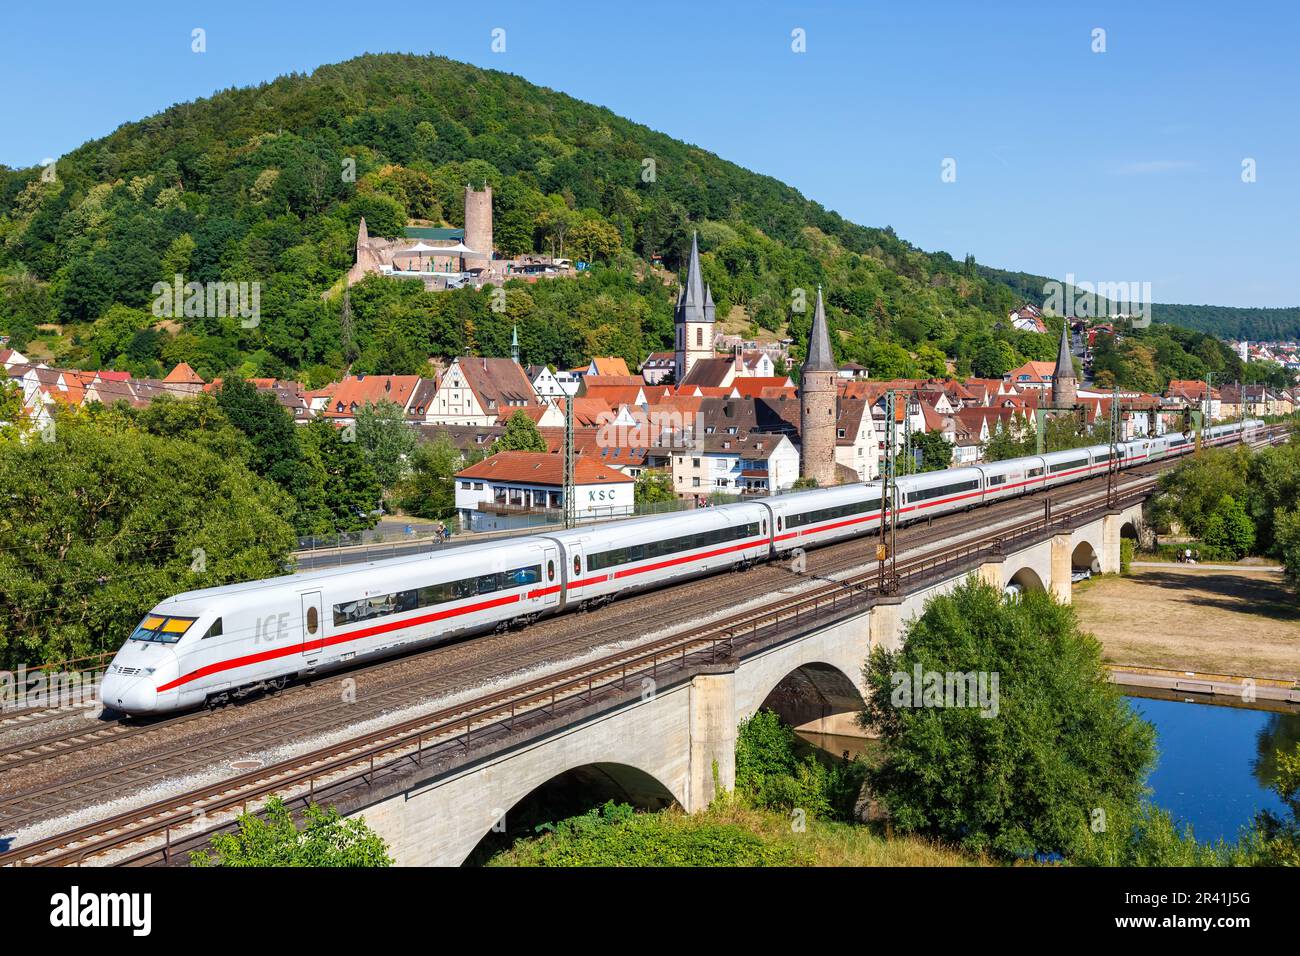 ICE 2 high speed train train of Deutsche Bahn DB in GemÃ¼nden am Main, Germany Stock Photo